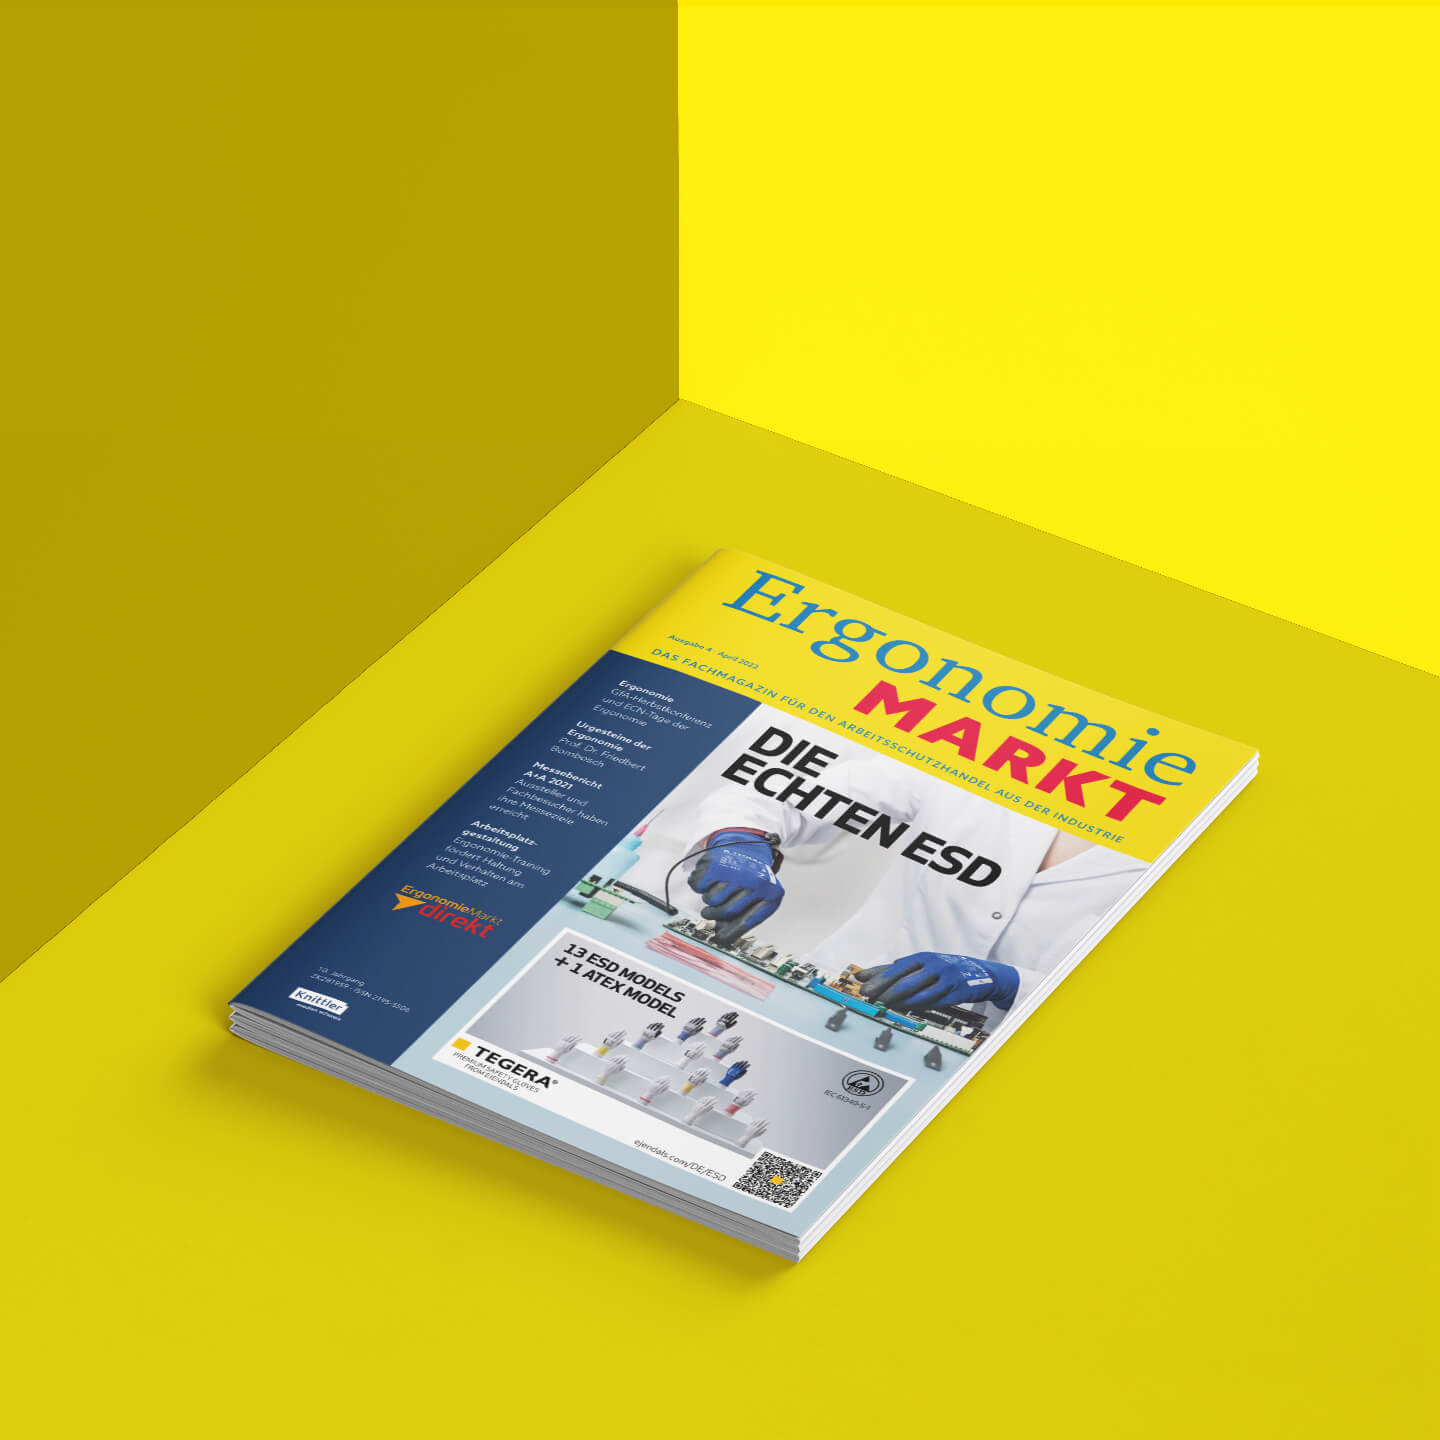 Ein ErgnomieMarkt-Heft vor einem einfarbig gelben Hintergrund